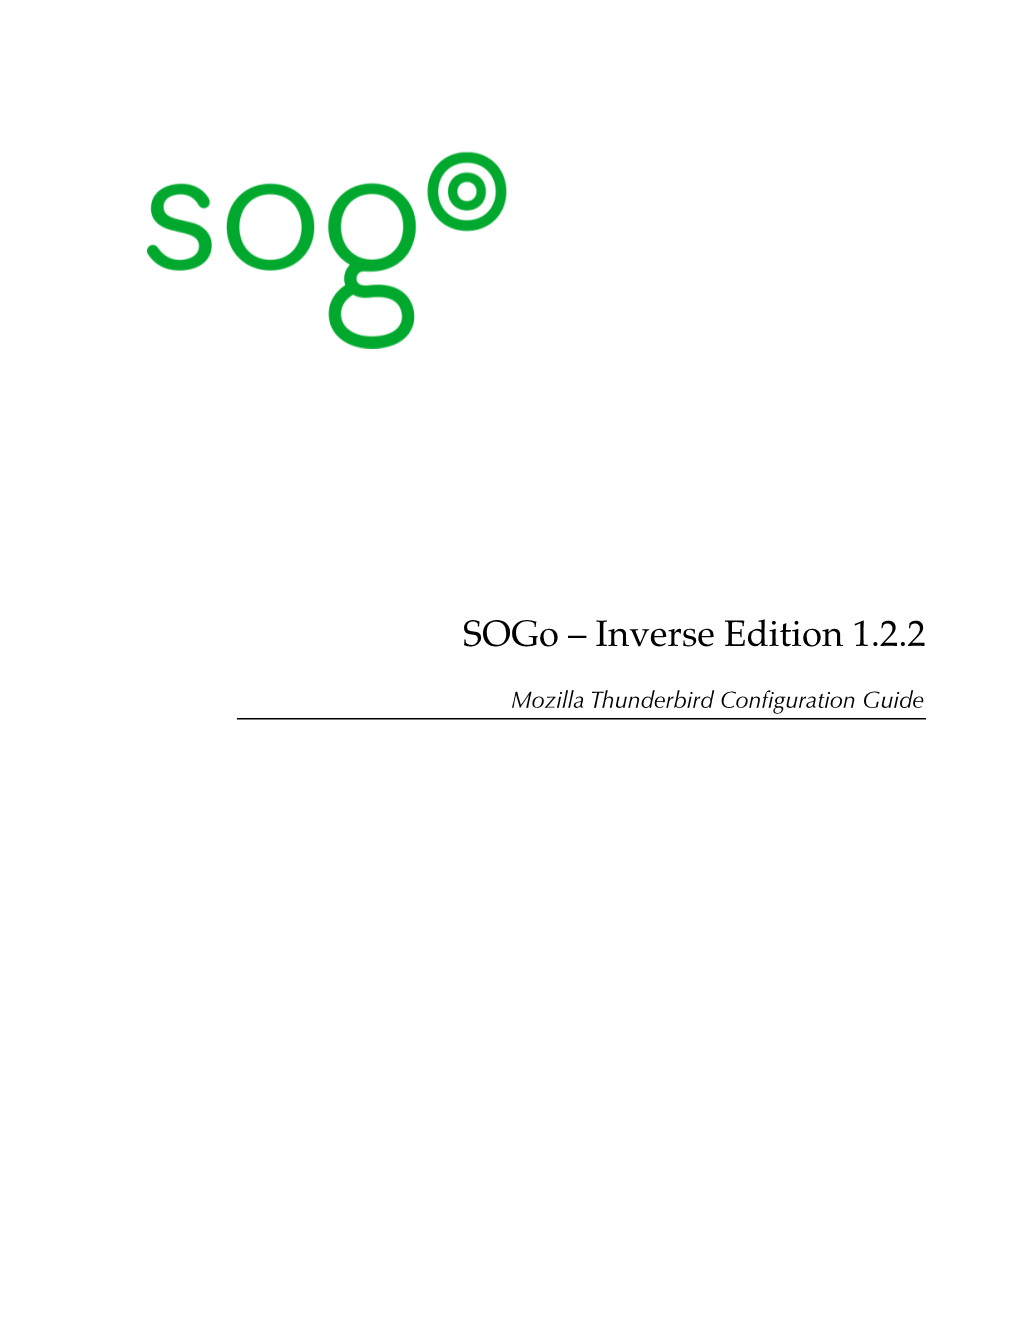 Sogo – Inverse Edition 1.2.2